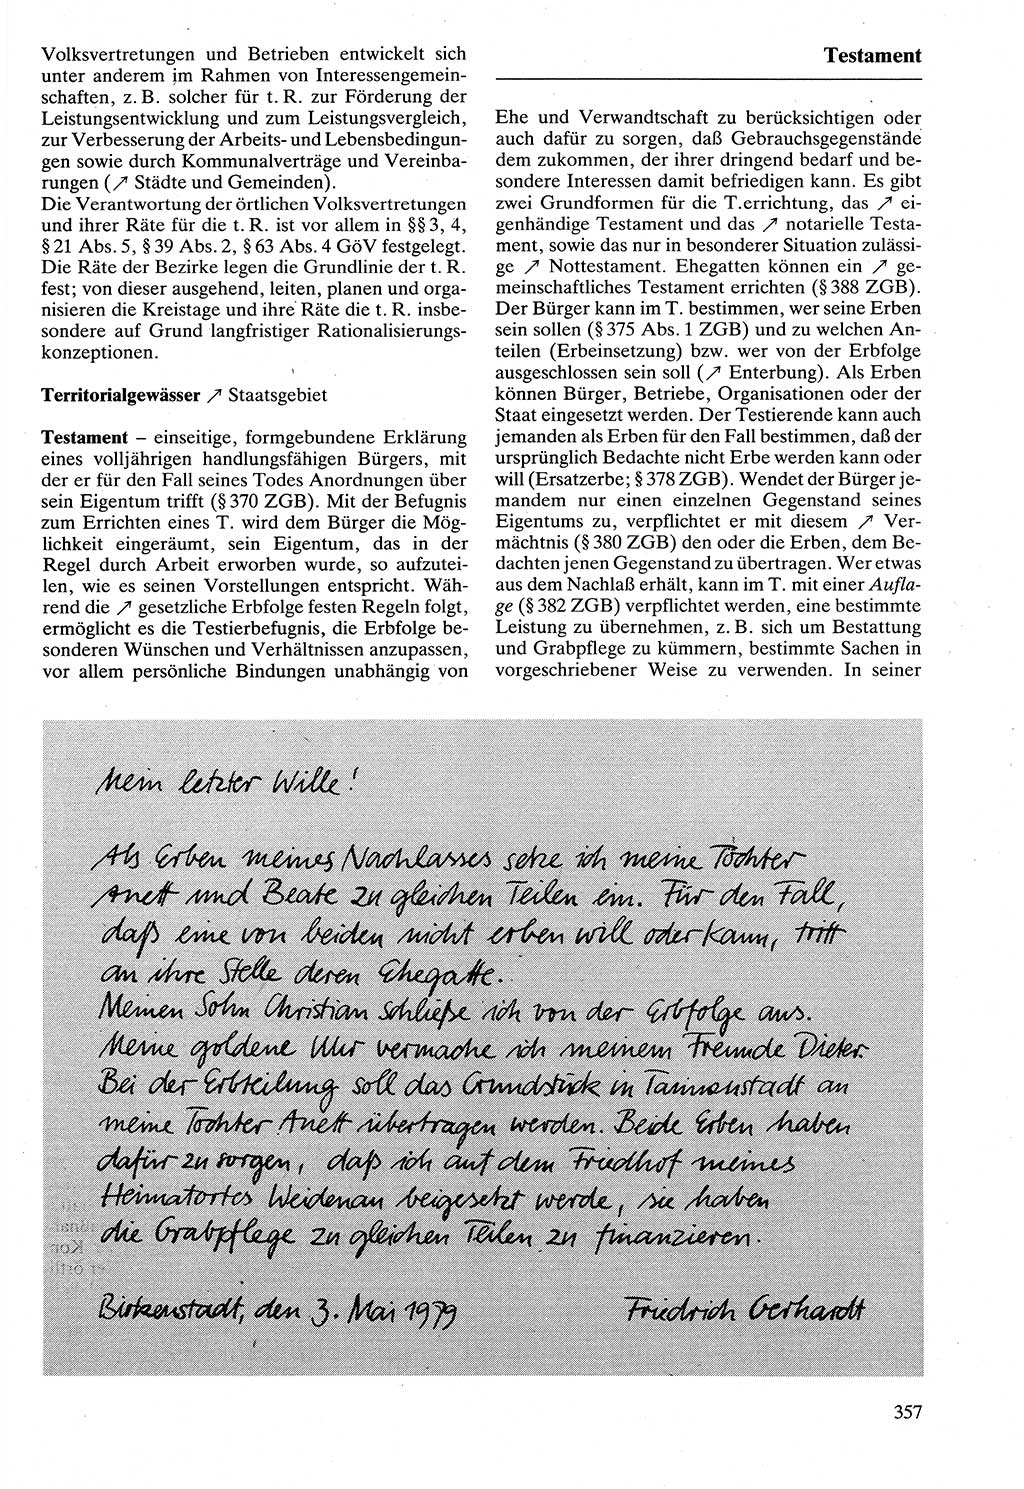 Rechtslexikon [Deutsche Demokratische Republik (DDR)] 1988, Seite 357 (Rechtslex. DDR 1988, S. 357)